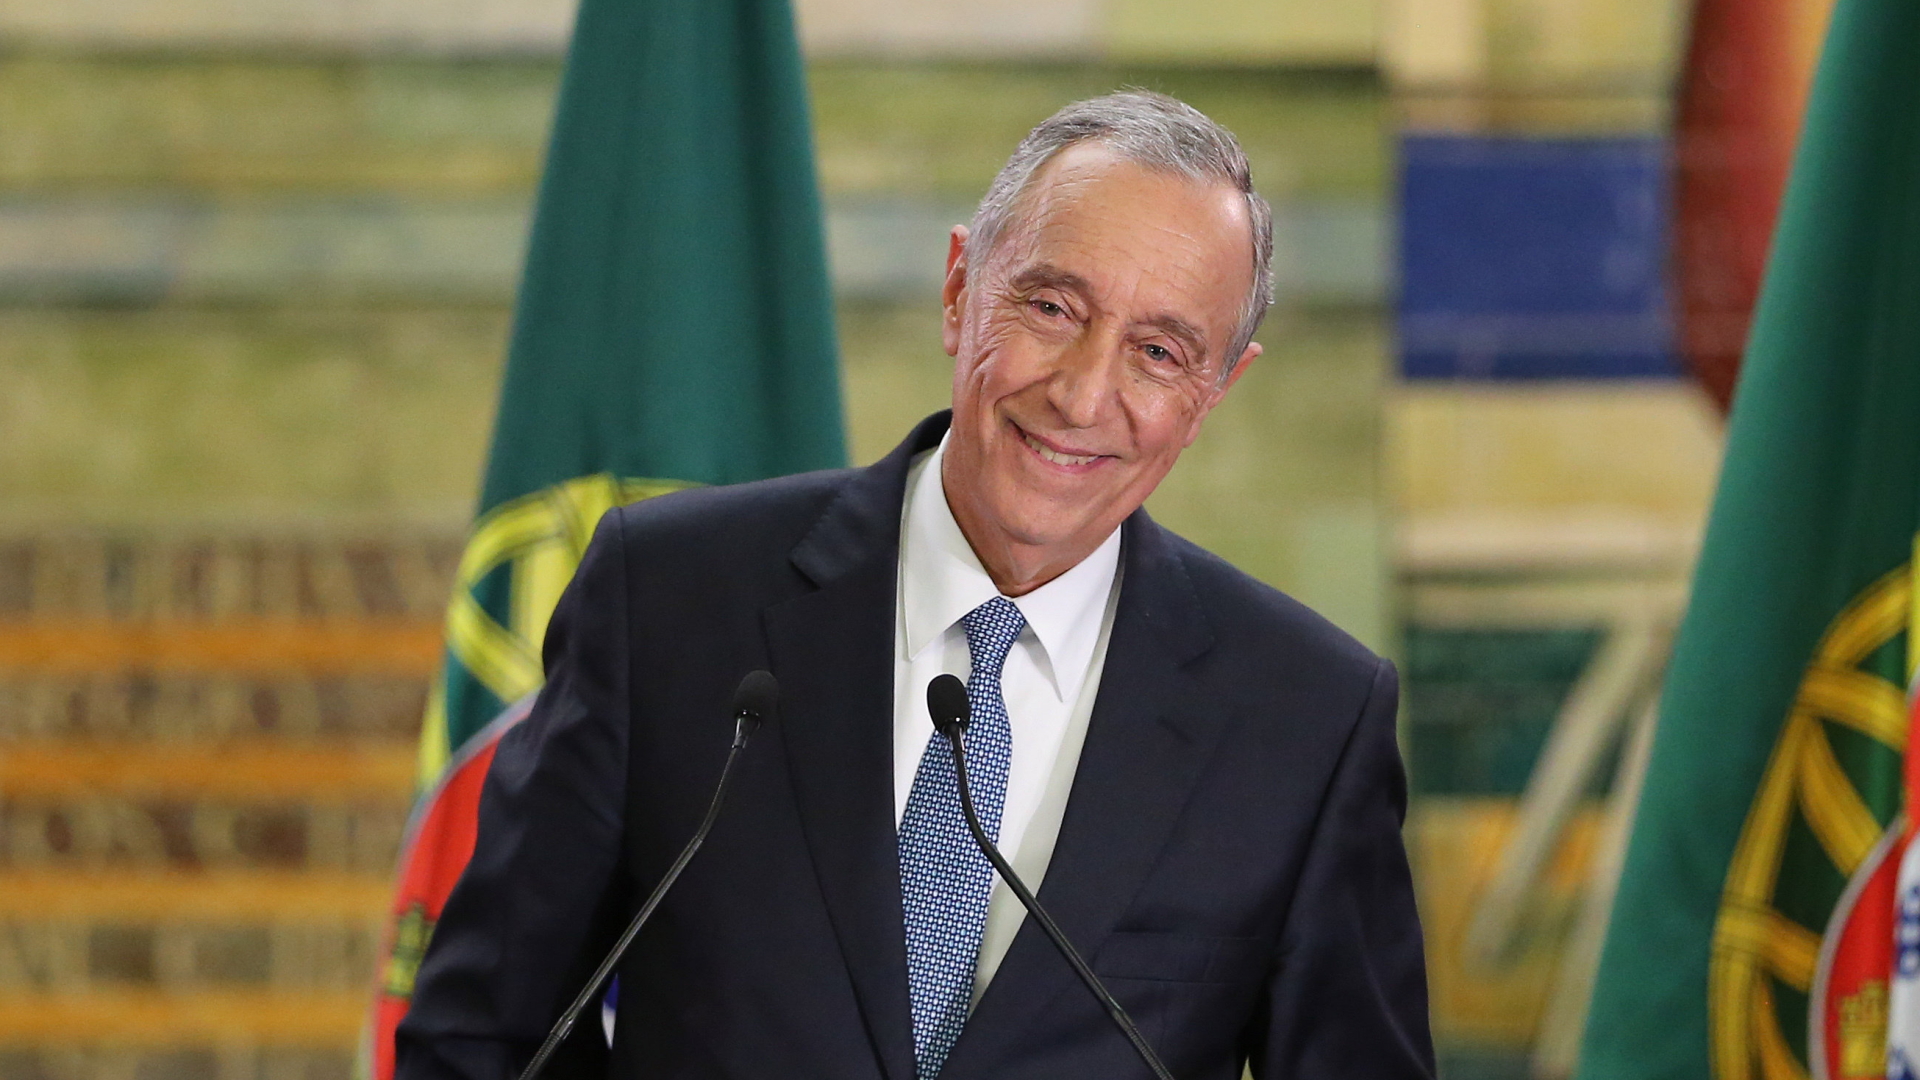 Der konservative Politiker Marcelo Rebelo de Sousa ist zum neuen Päsidenten Portugals gewählt worden